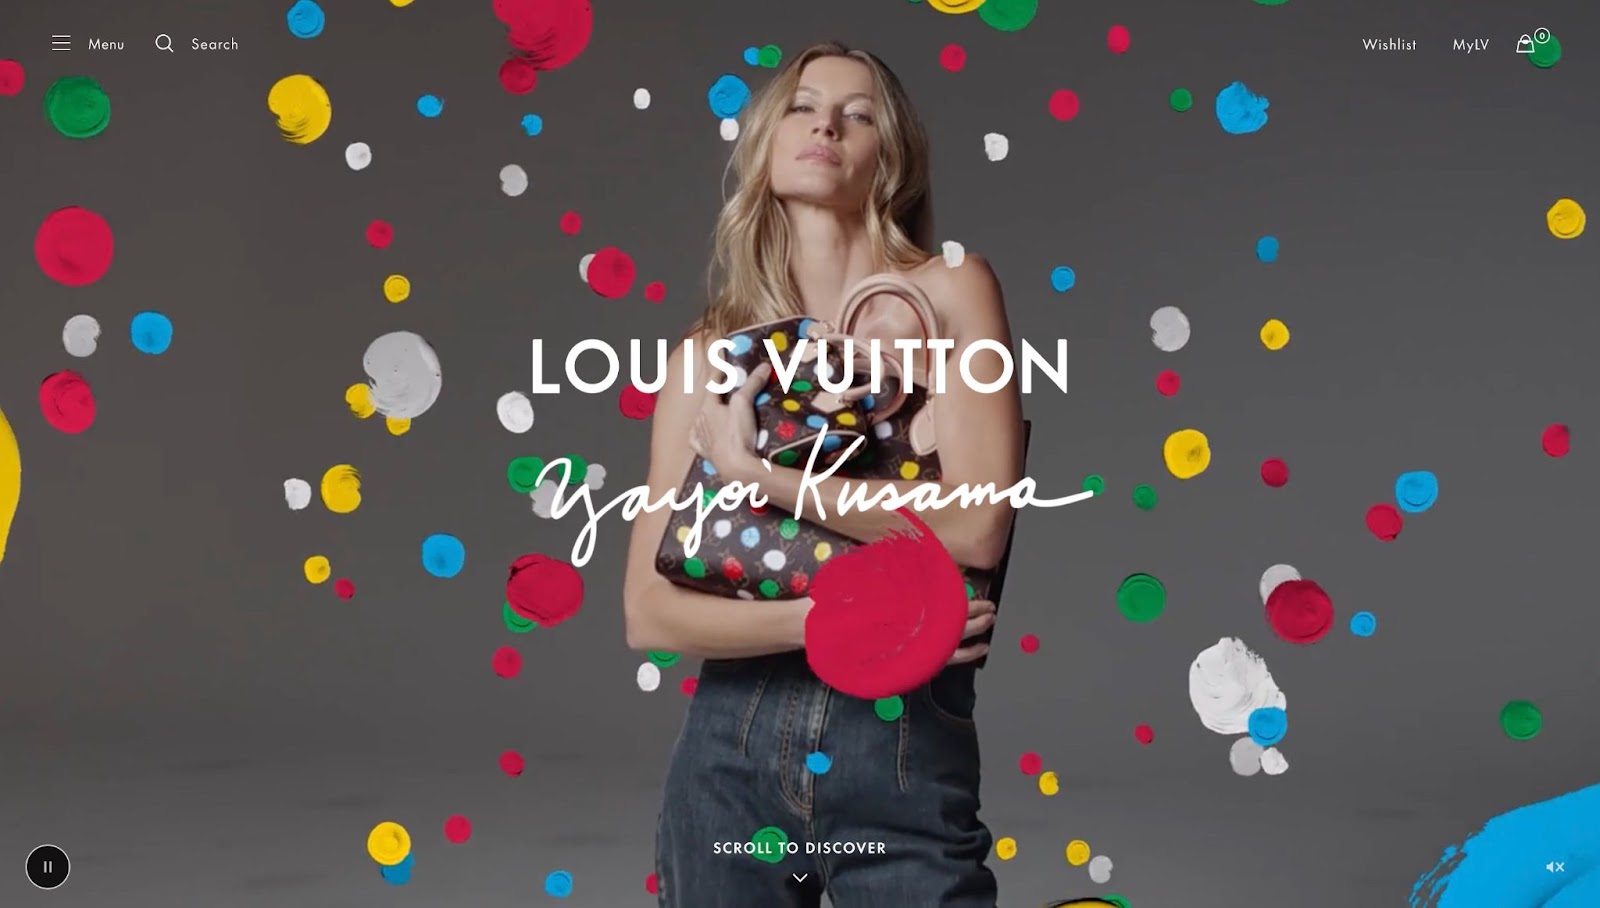 รูปภาพของ Gisele Bundchen ในชุด Louis Vuitton x Yayoi Kusama โดยเธอถือกระเป๋าจากคอลเลกชั่นที่มีลายจุดล้อมรอบตัวเธอ